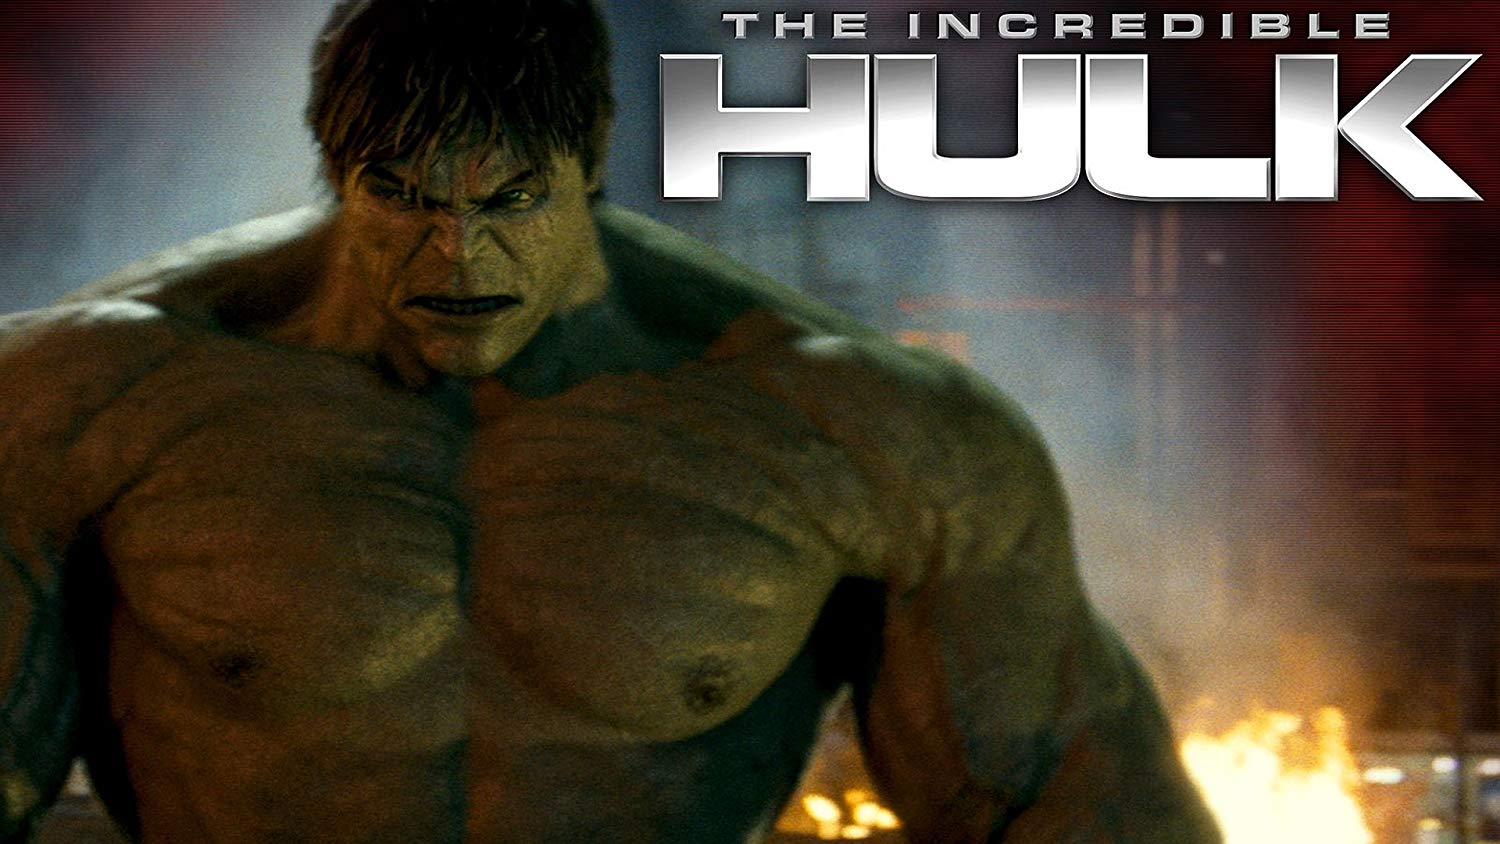 Incredible Hulk Wallpaper Hd 1080p - HD Wallpaper 